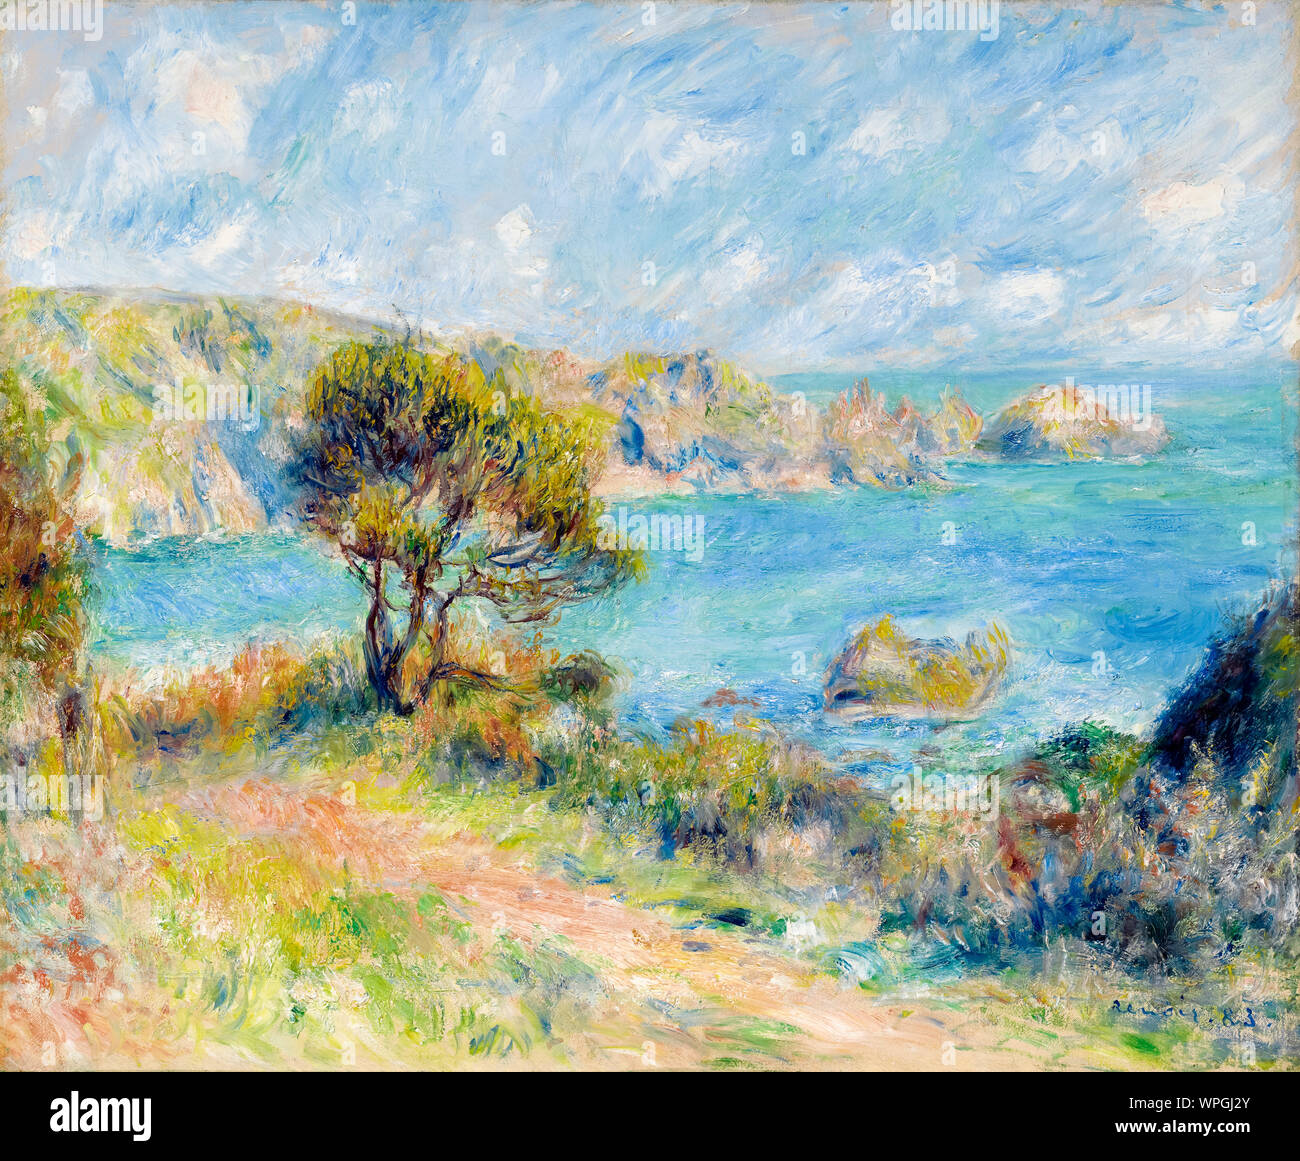 Pierre Auguste Renoir, la peinture de paysage, à Guernesey, 1883 Banque D'Images